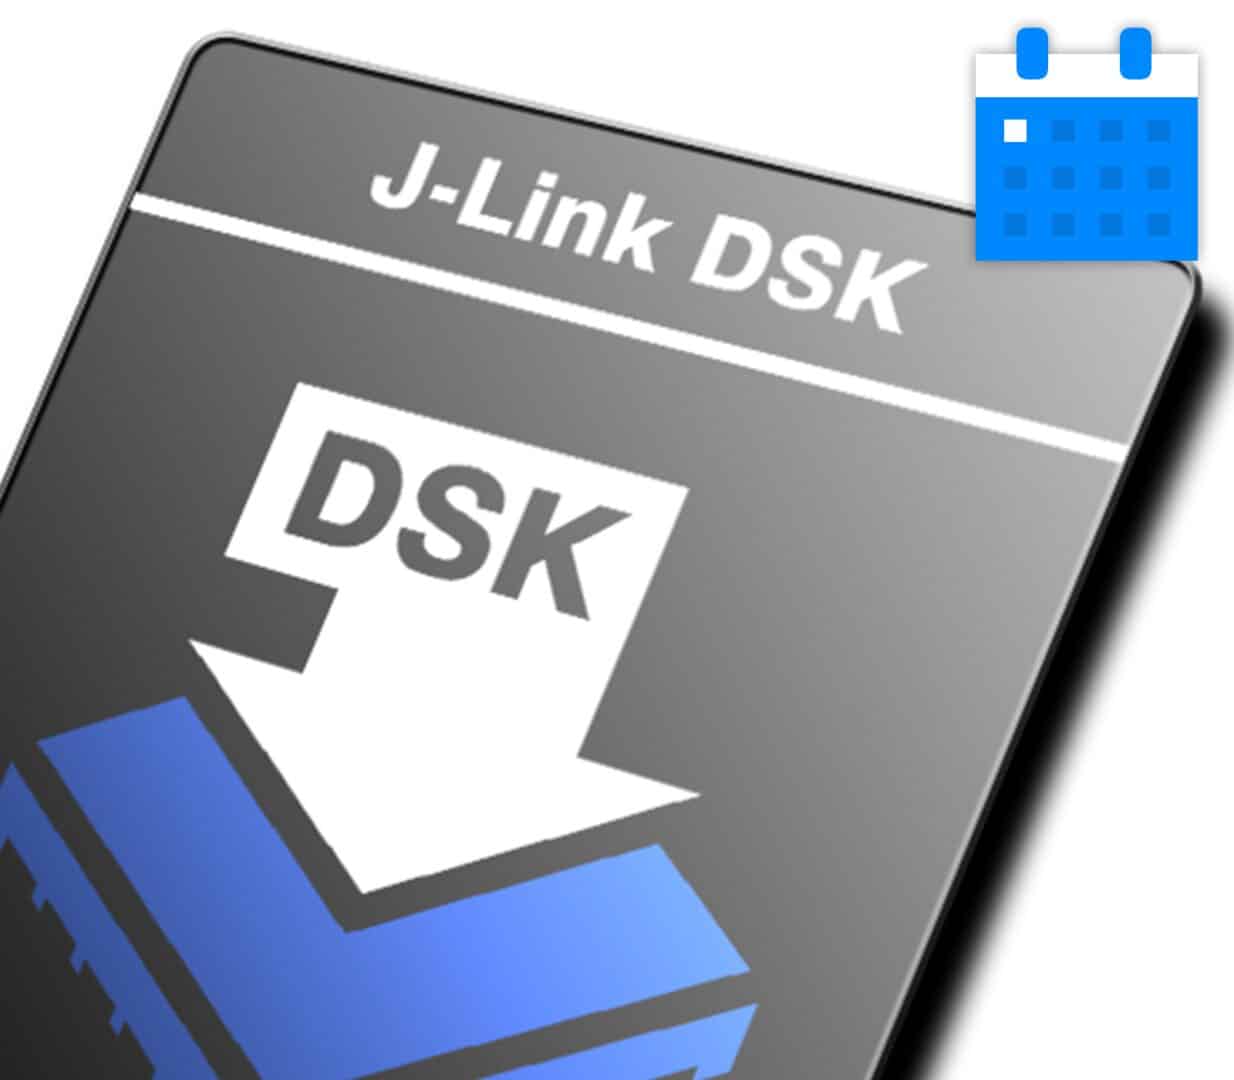 J-Link DSK SUA Extension